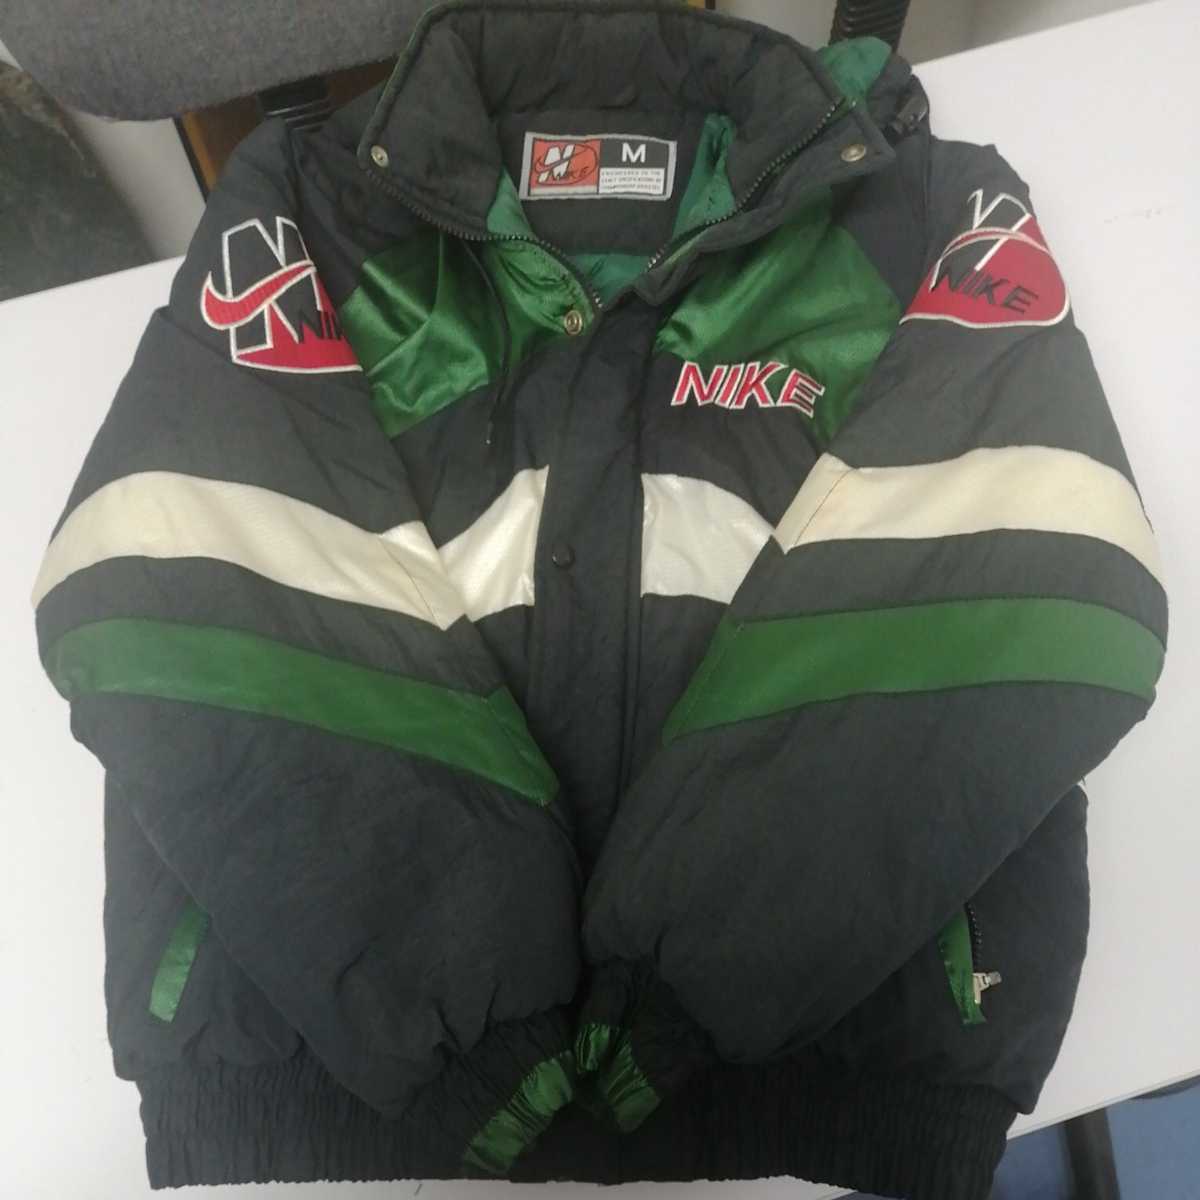 90s ヴィンテージ ナイキ スポーツジャケット フード付 緑 Mサイズ 元ネタシュプリーム USA製 NIKE スポーツウェア パーカー  コレクション